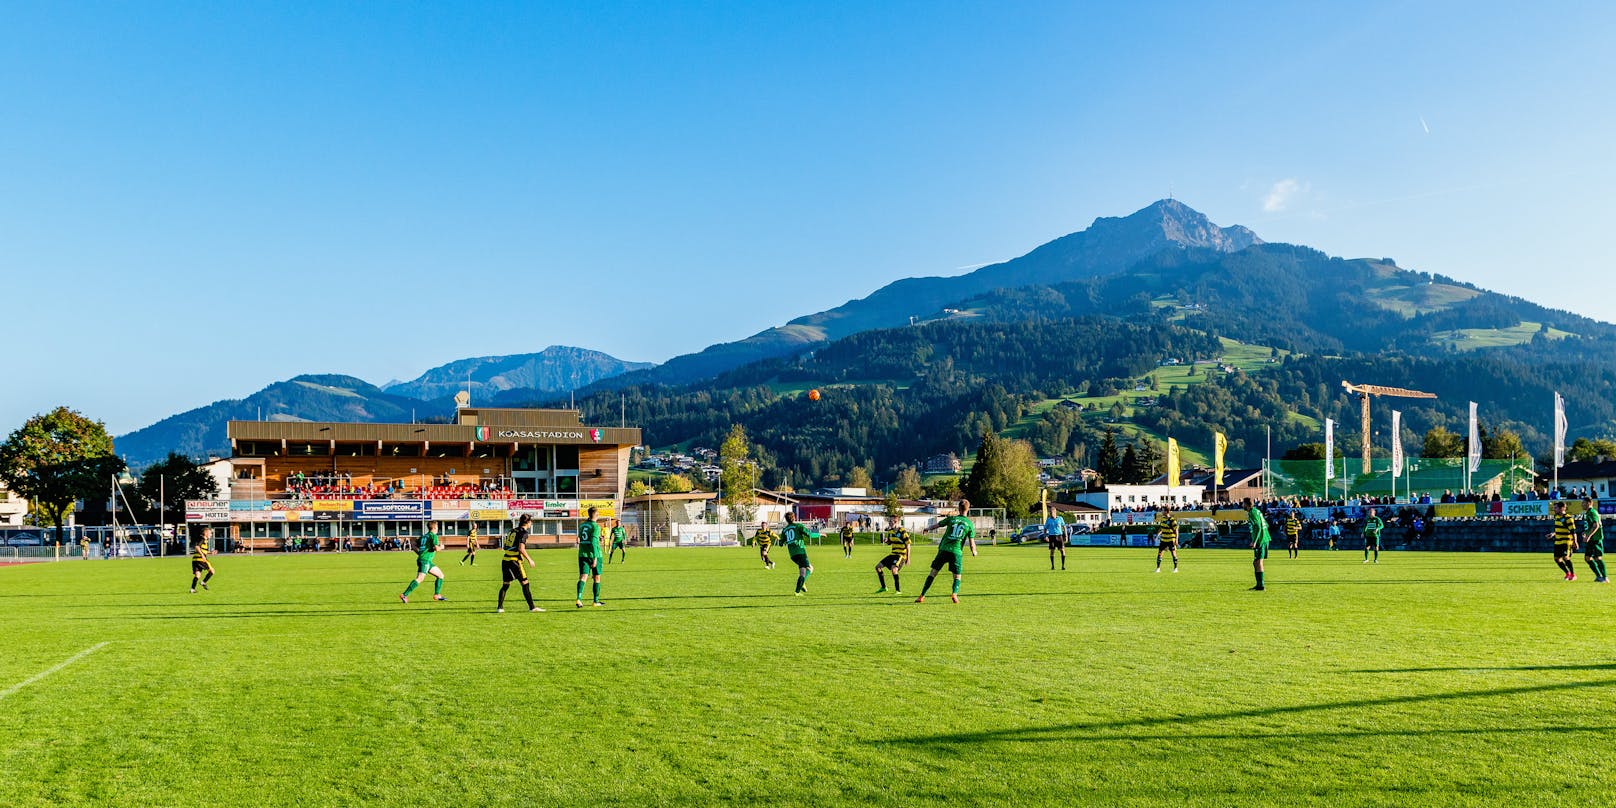 Sympolbild (Koasastadion in St. Johann in Tirol)